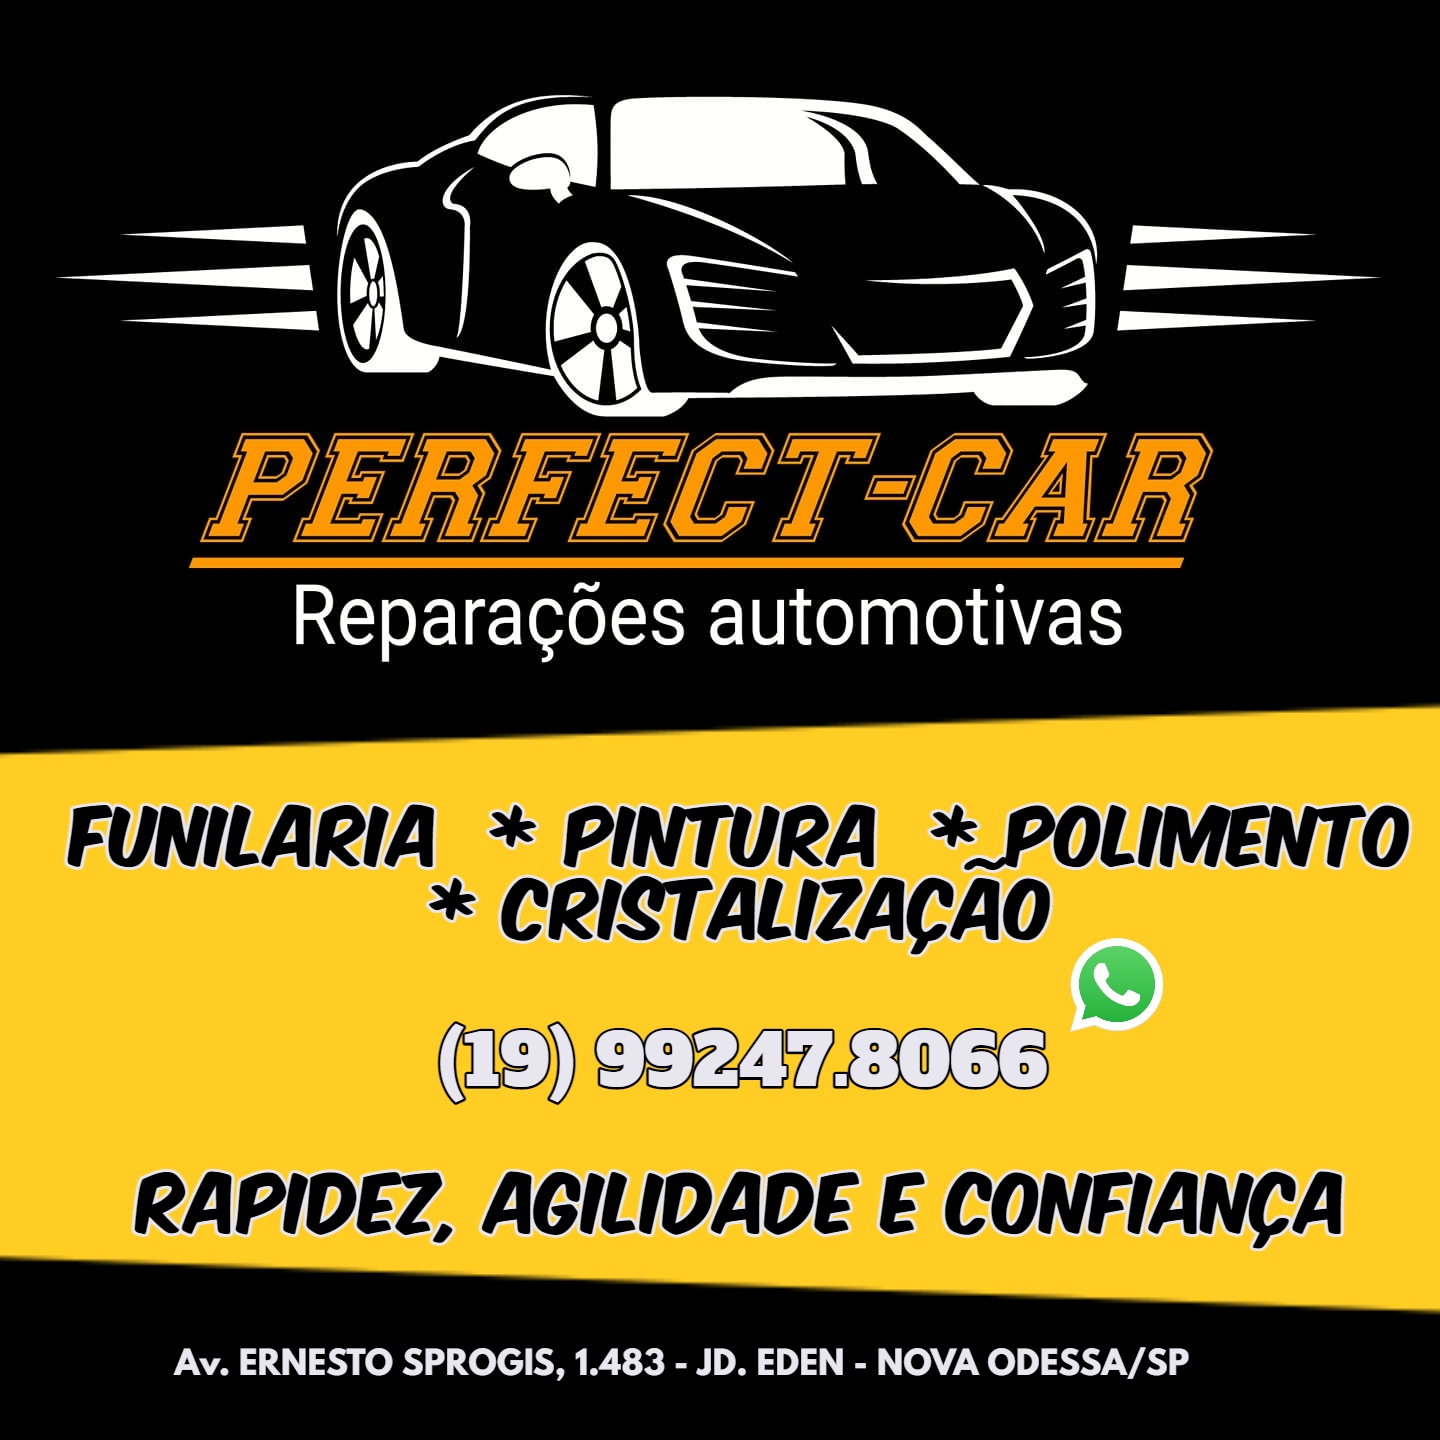 Publicidade PERFECT CAR Reparações Automotivas